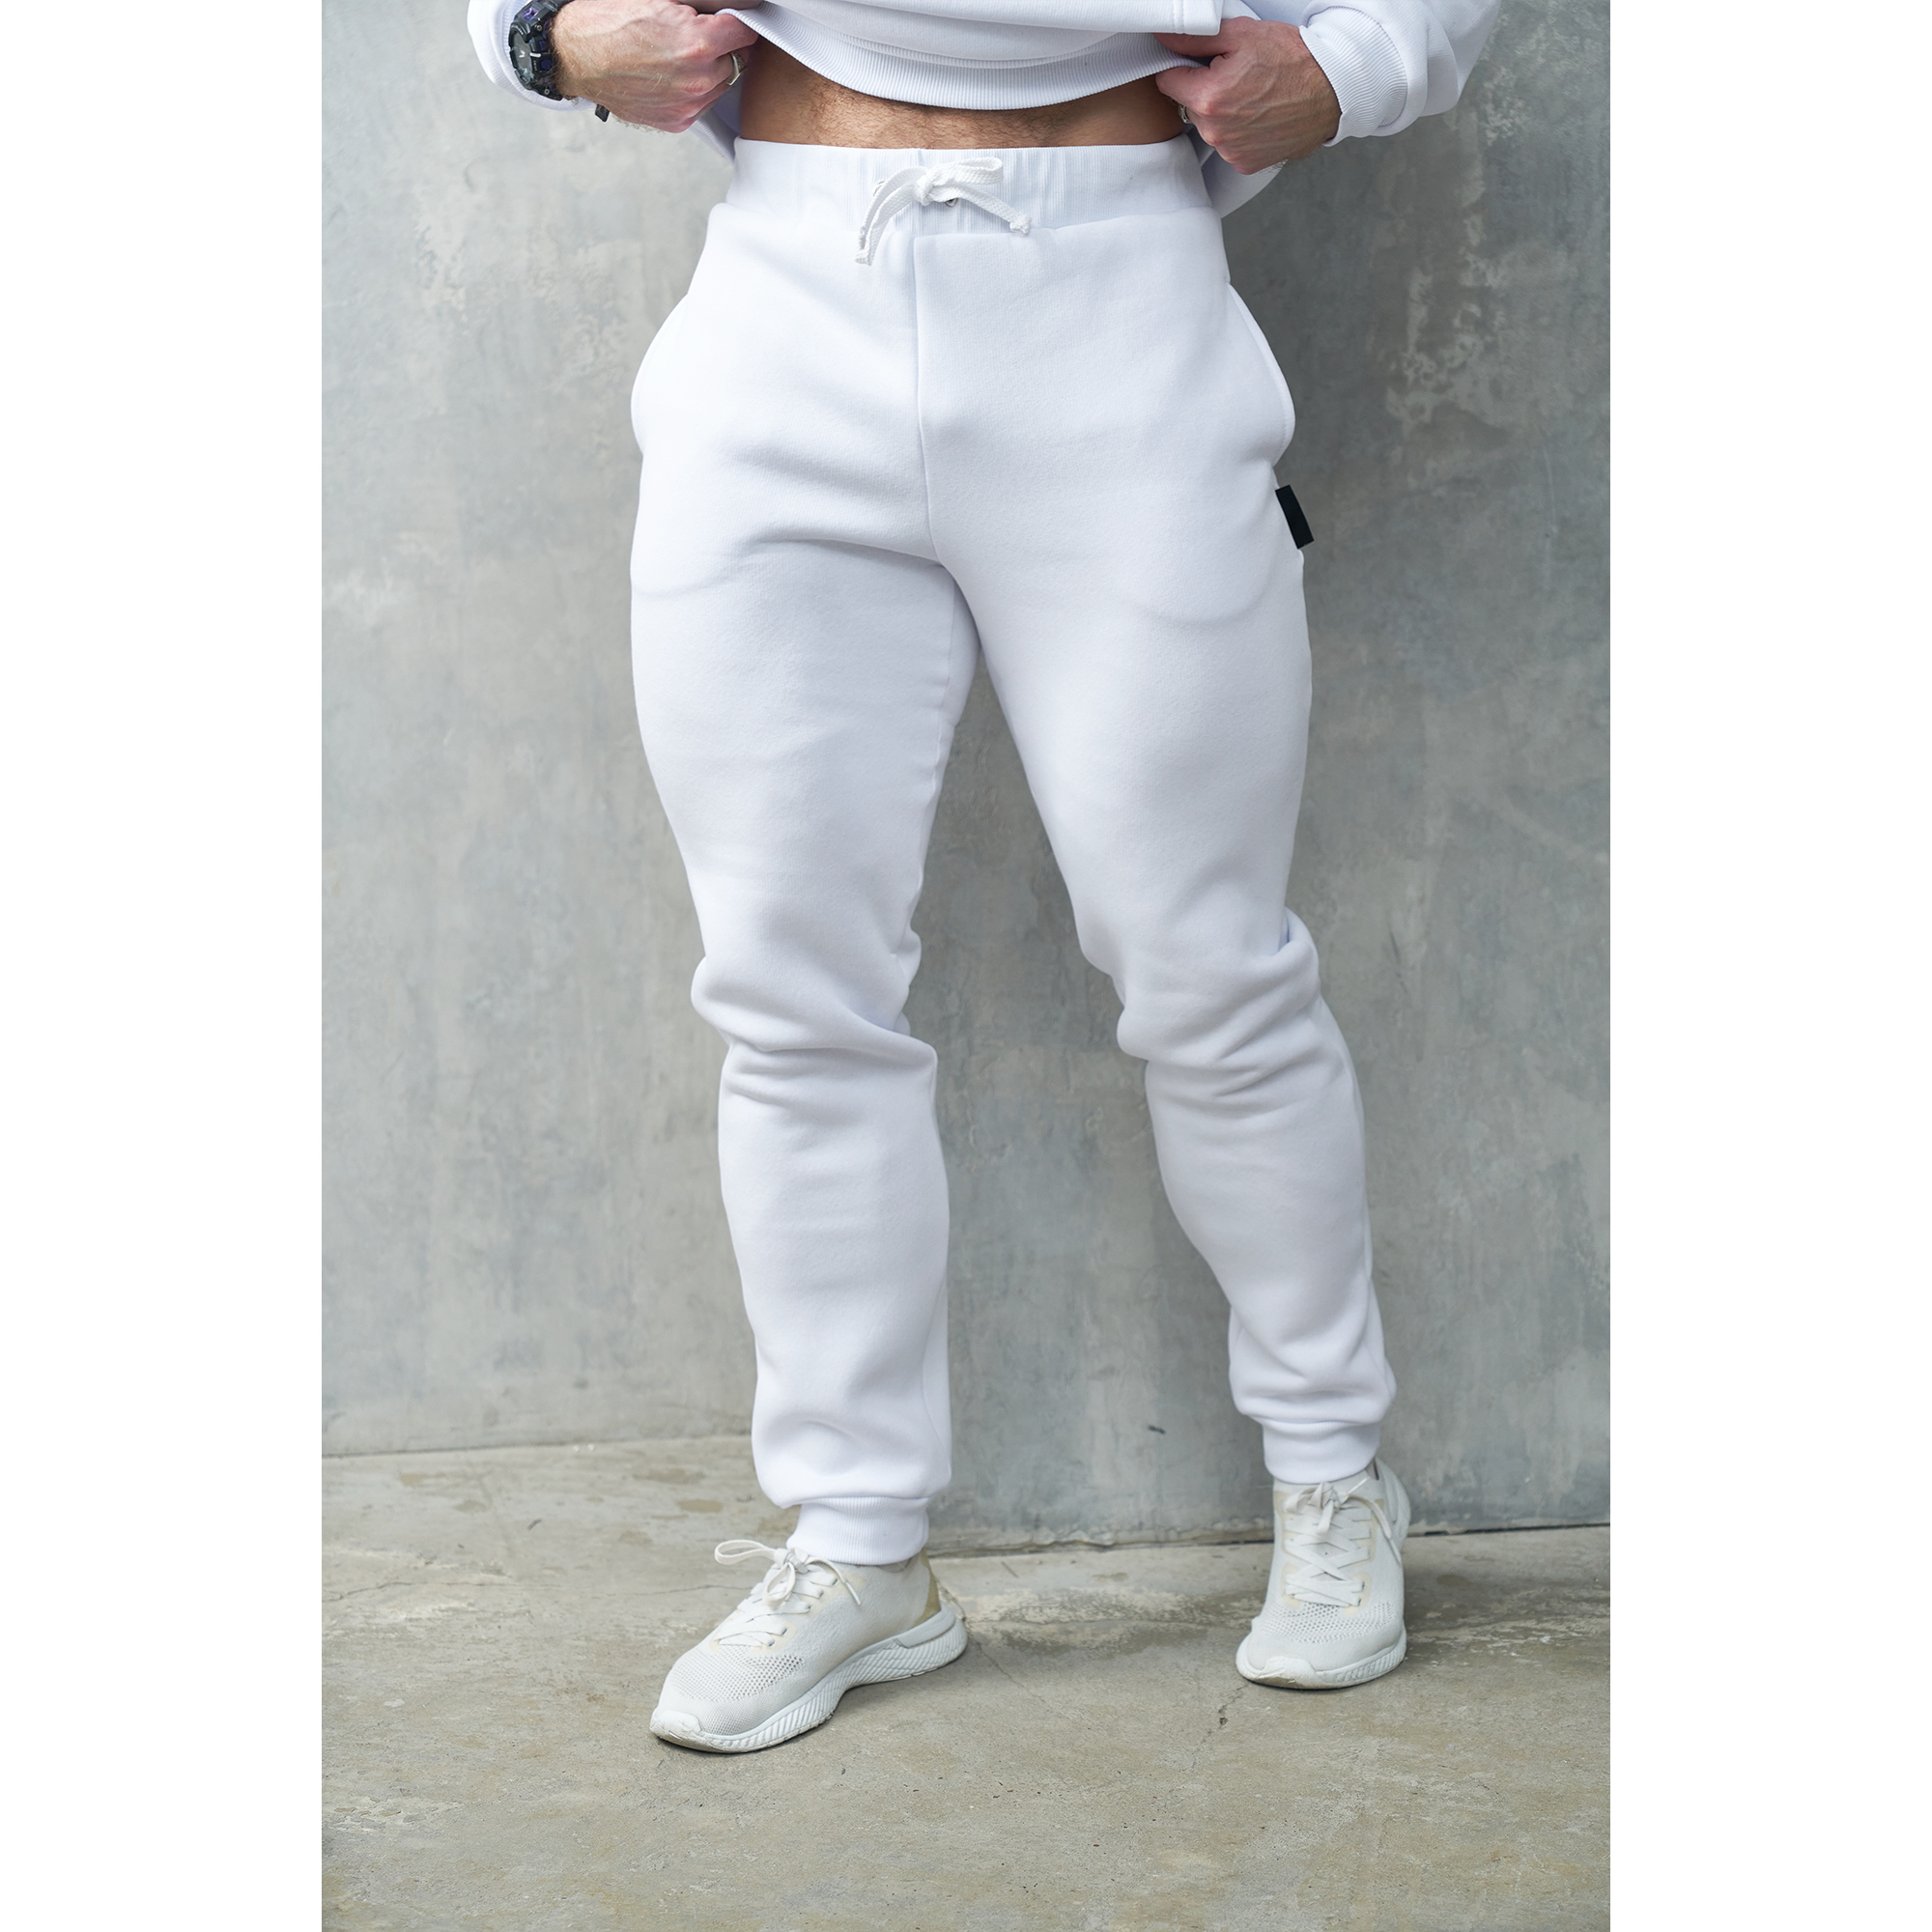 Спортивные брюки мужские Персона Premium БрМ белые M/188